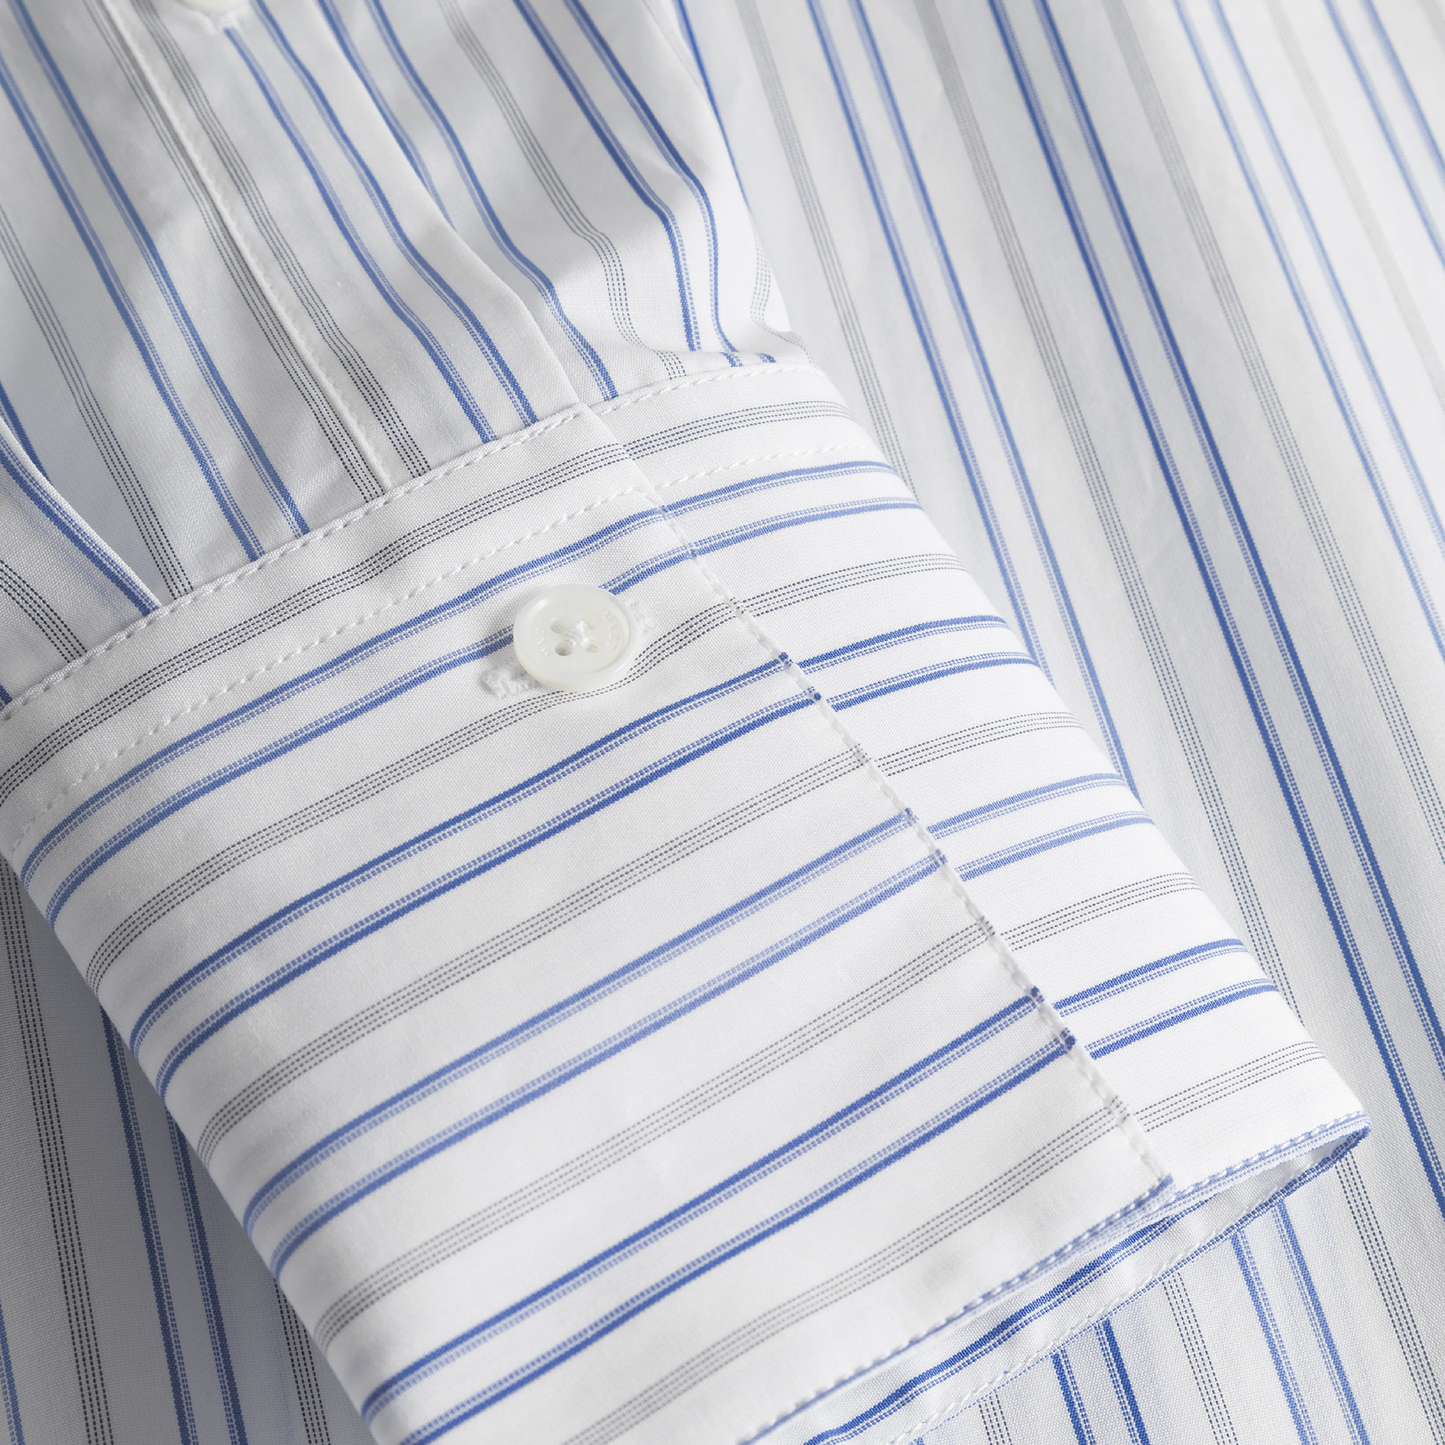 Bertine Striped Poplin Skjorte, Blue Stripe